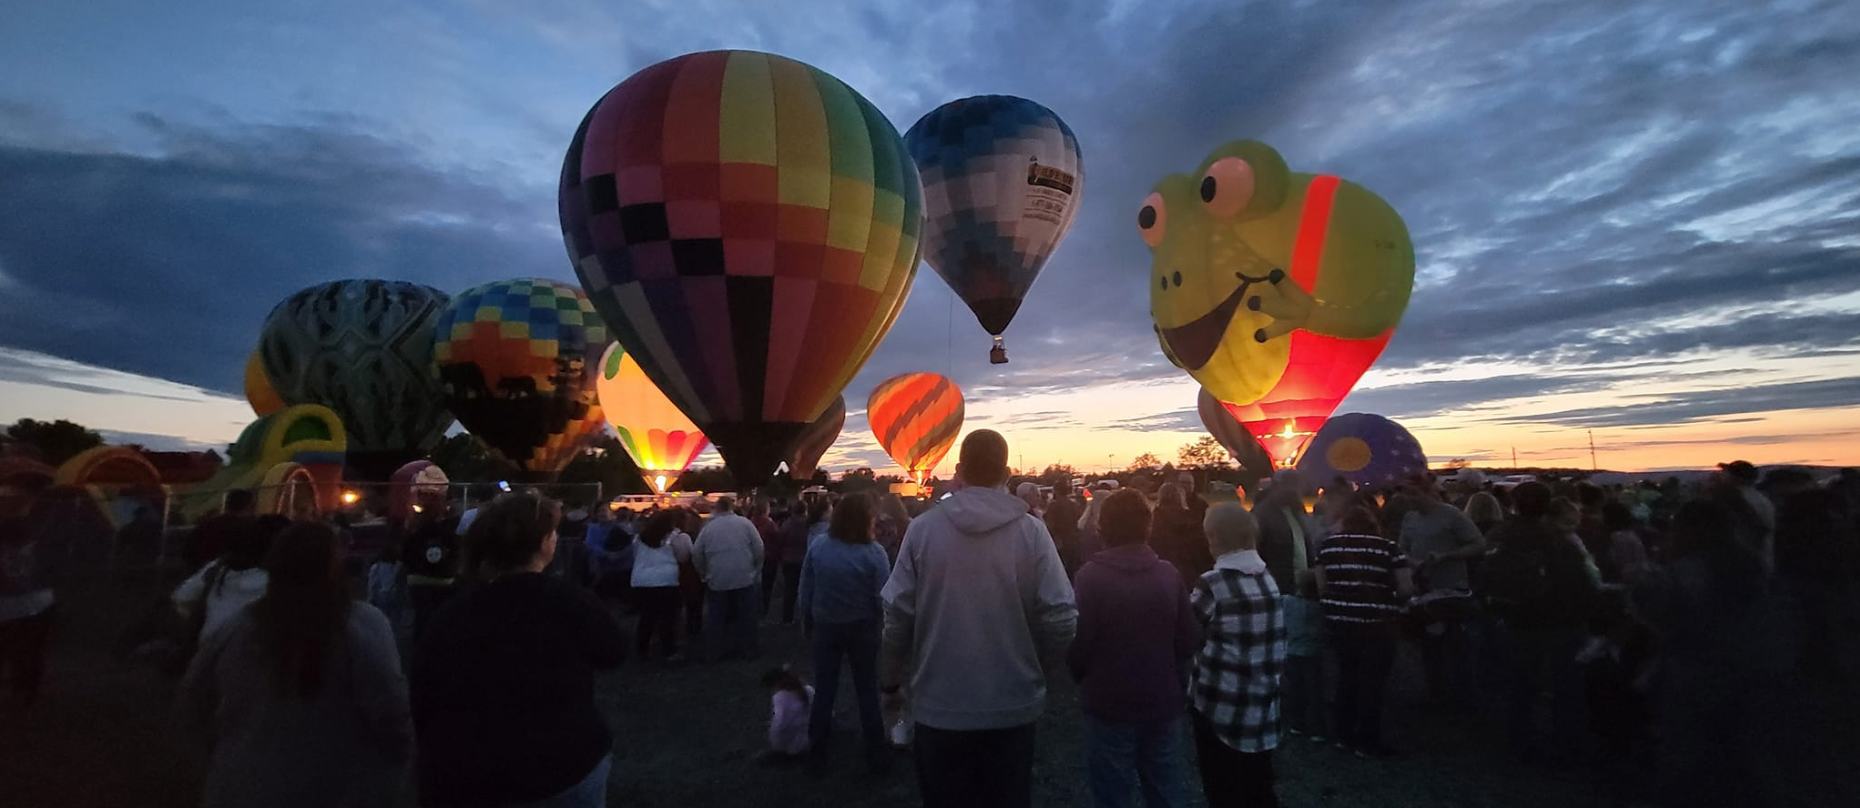 Maine hot air balloon fest